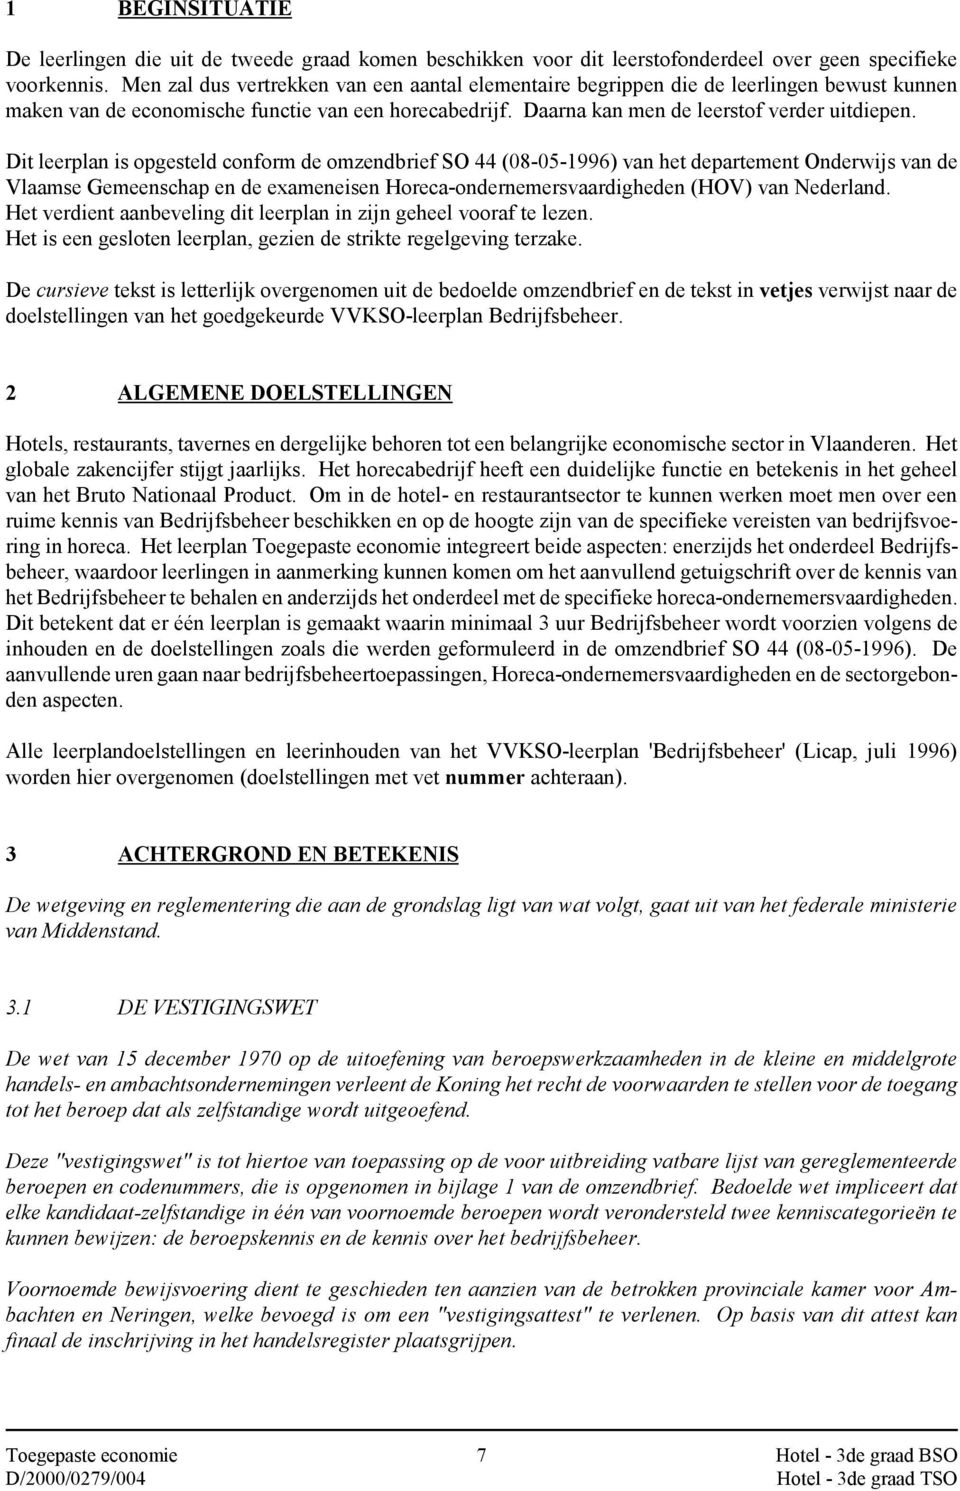 Dit leerplan is opgesteld conform de omzendbrief SO 44 (08-05-1996) van het departement Onderwijs van de Vlaamse Gemeenschap en de exameneisen Horeca-ondernemersvaardigheden (HOV) van Nederland.